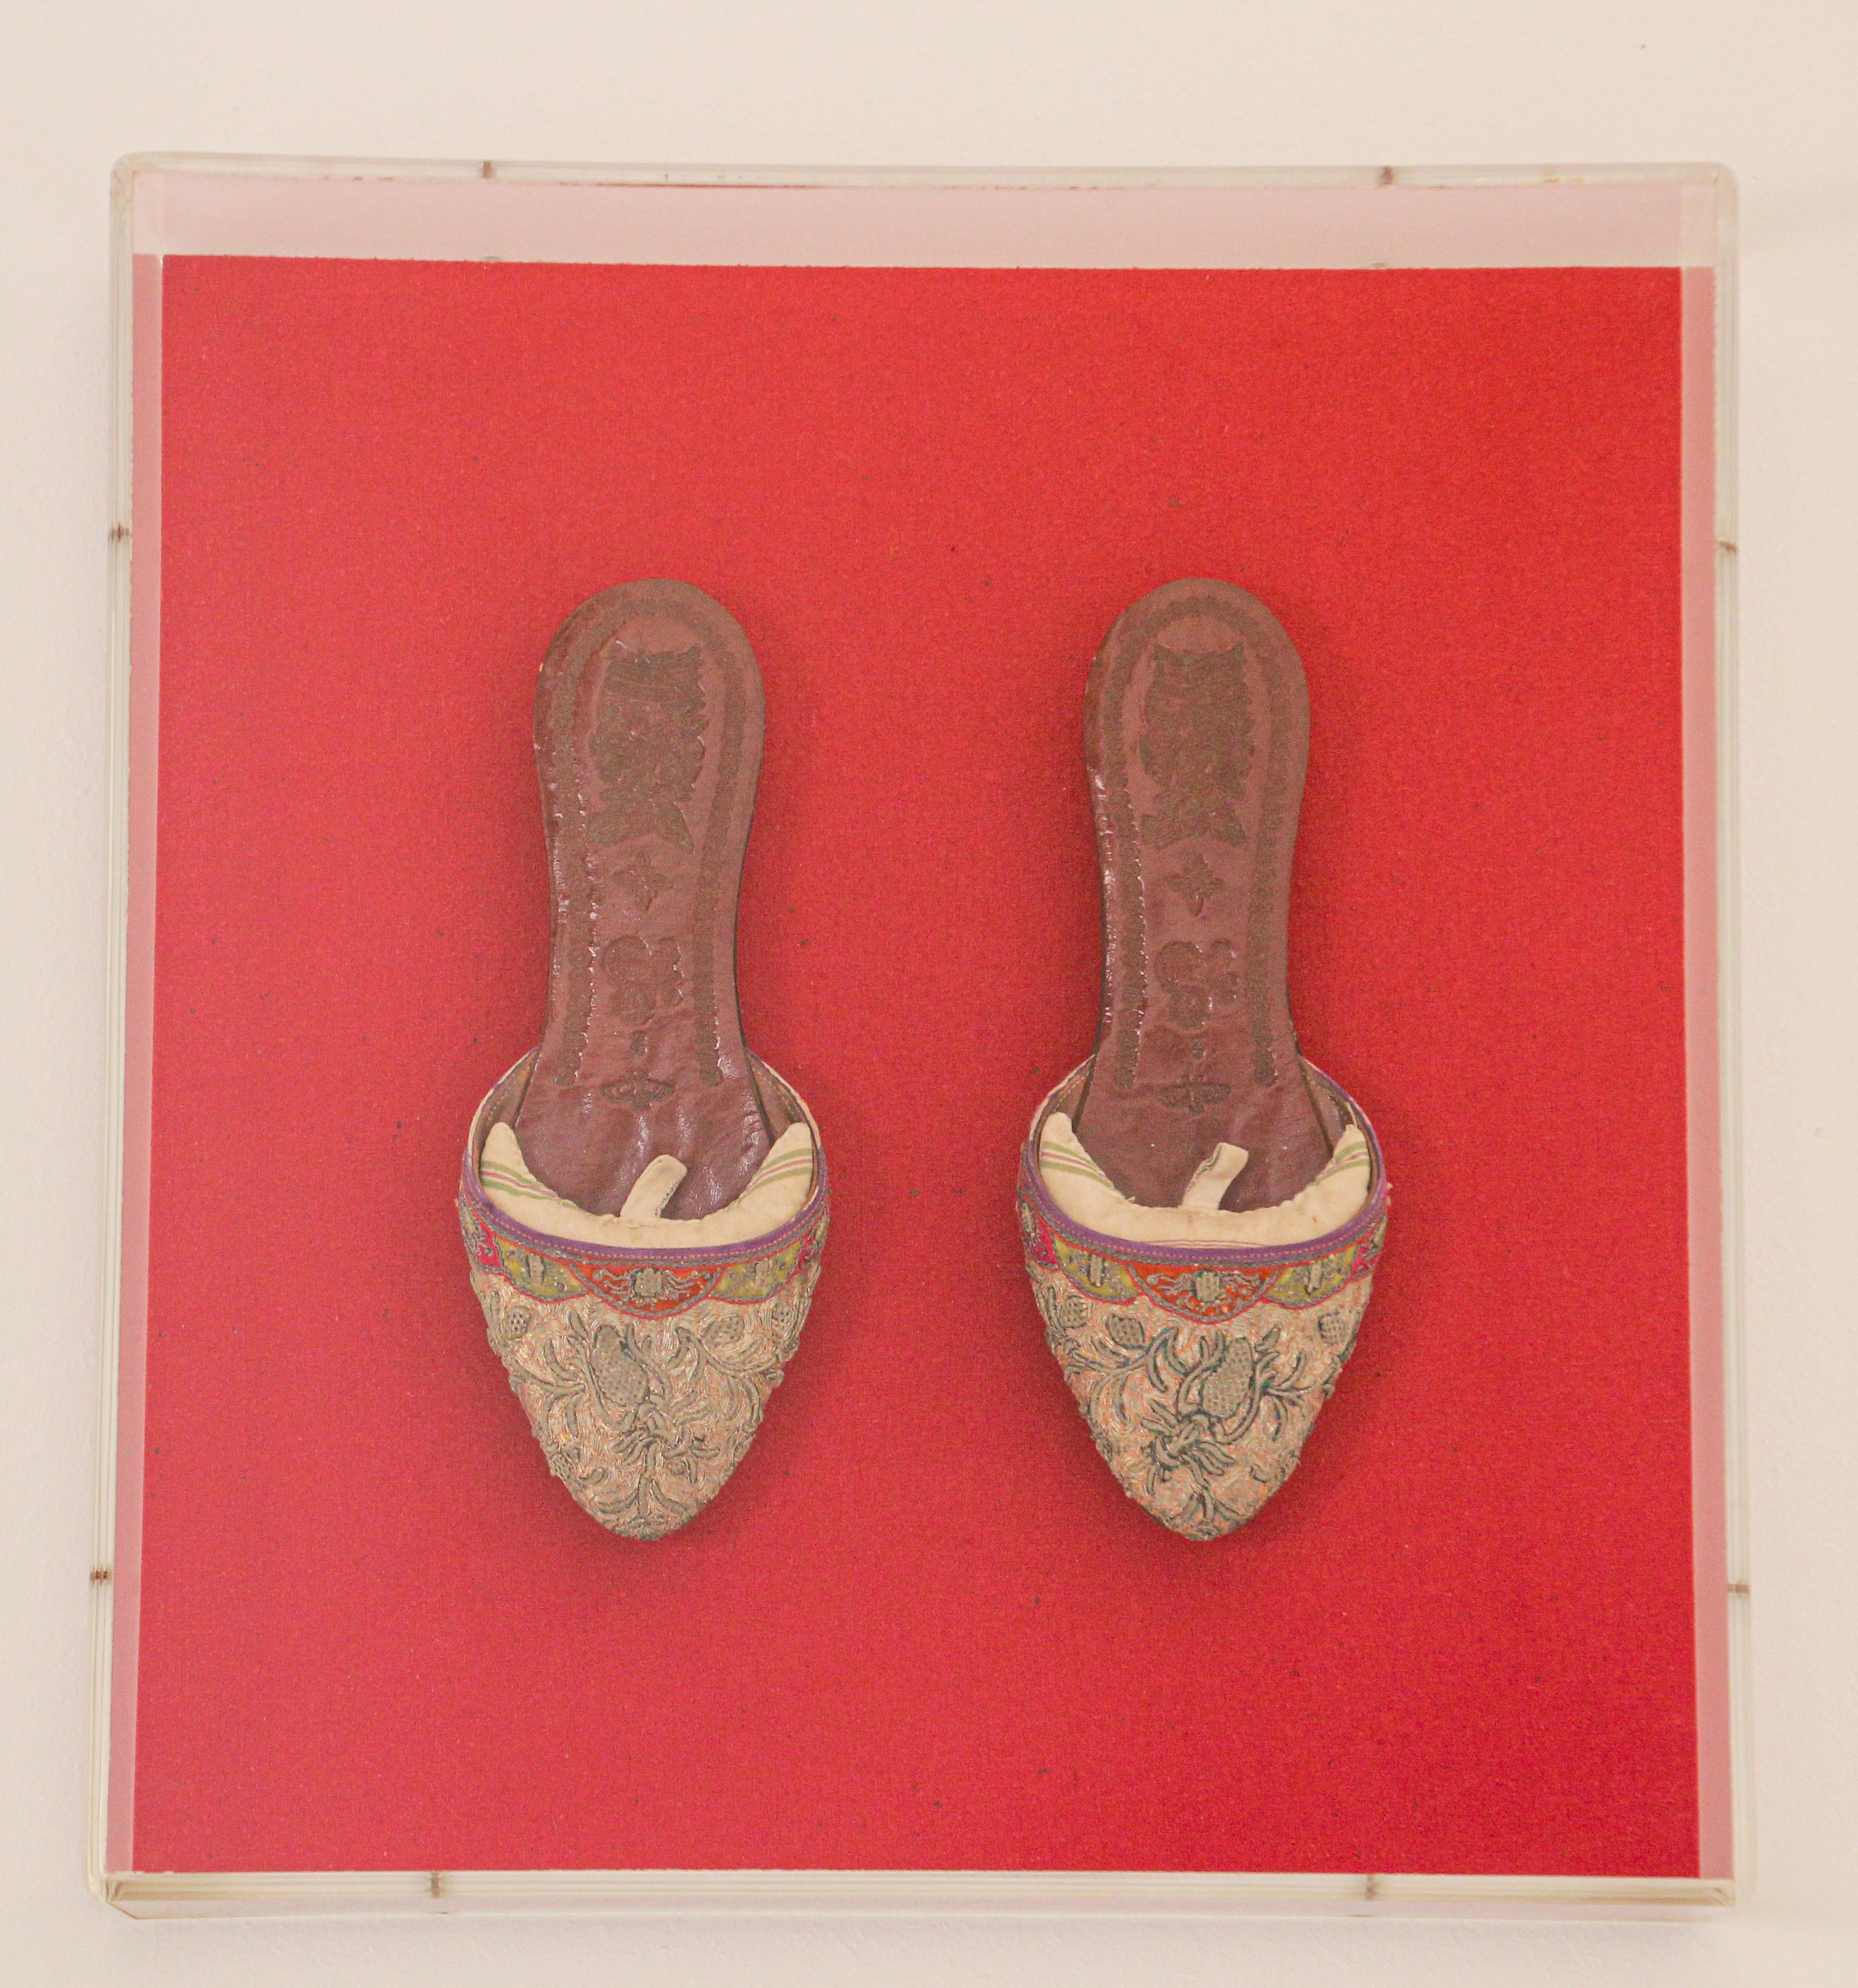 Encadrée dans une boîte en Lucite, paire de chaussures asiatiques chinoises en cuir et soie brodées et ornées de fils d'or.
Exquise paire de chaussures anciennes de collection montées et présentées sur un fond rouge.